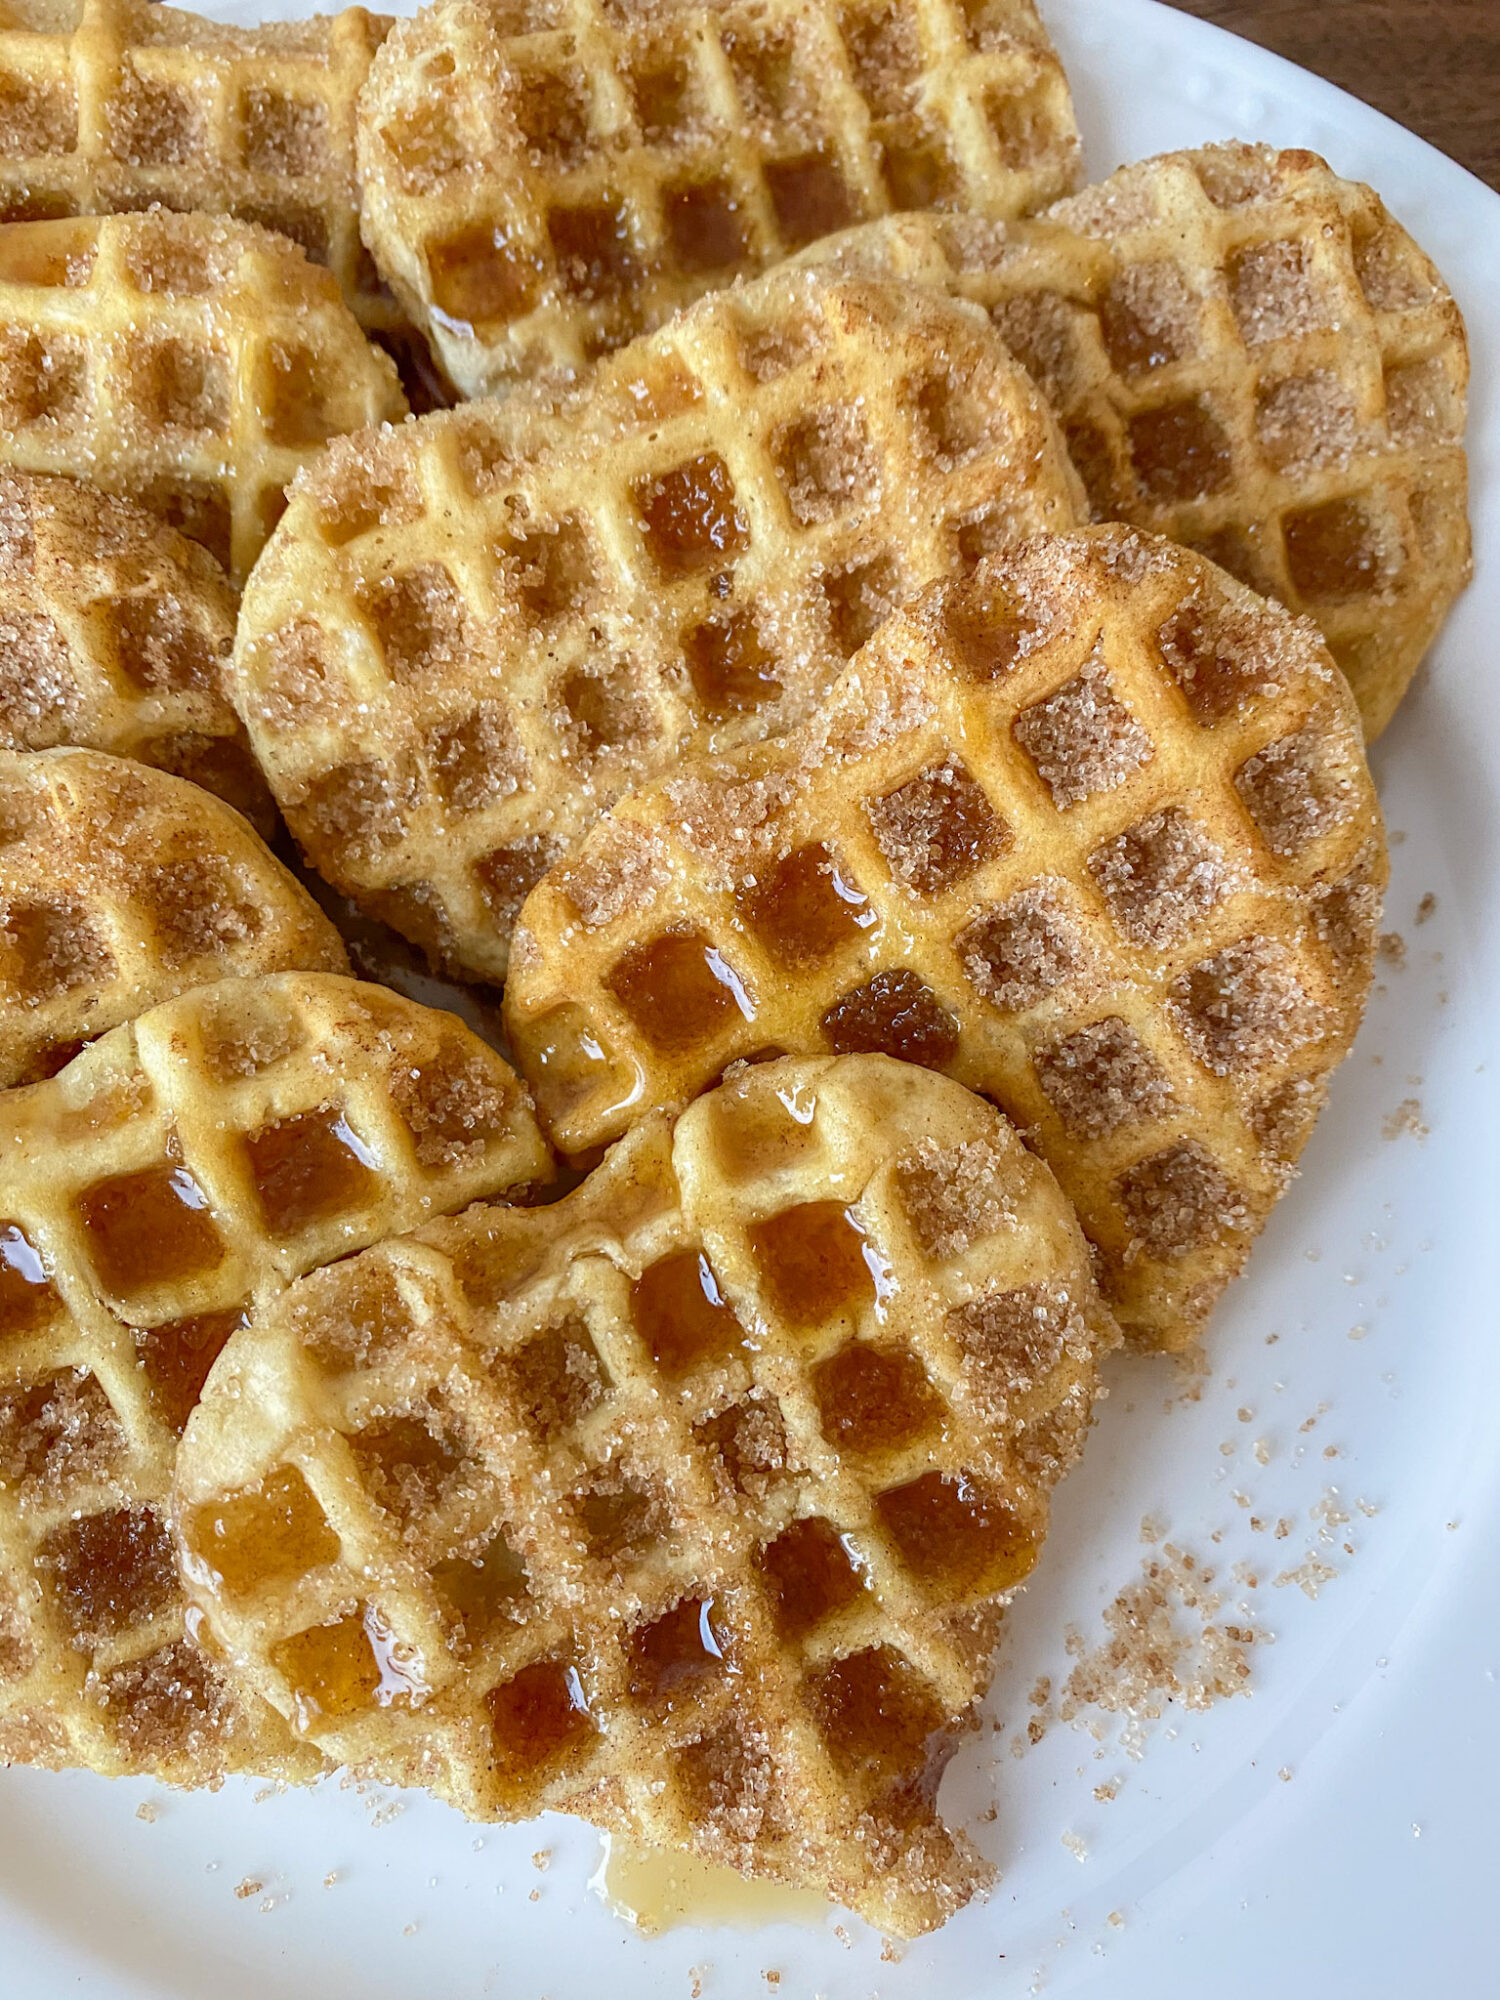 6 Ingredient Vegan Waffles with Cinnamon Sugar